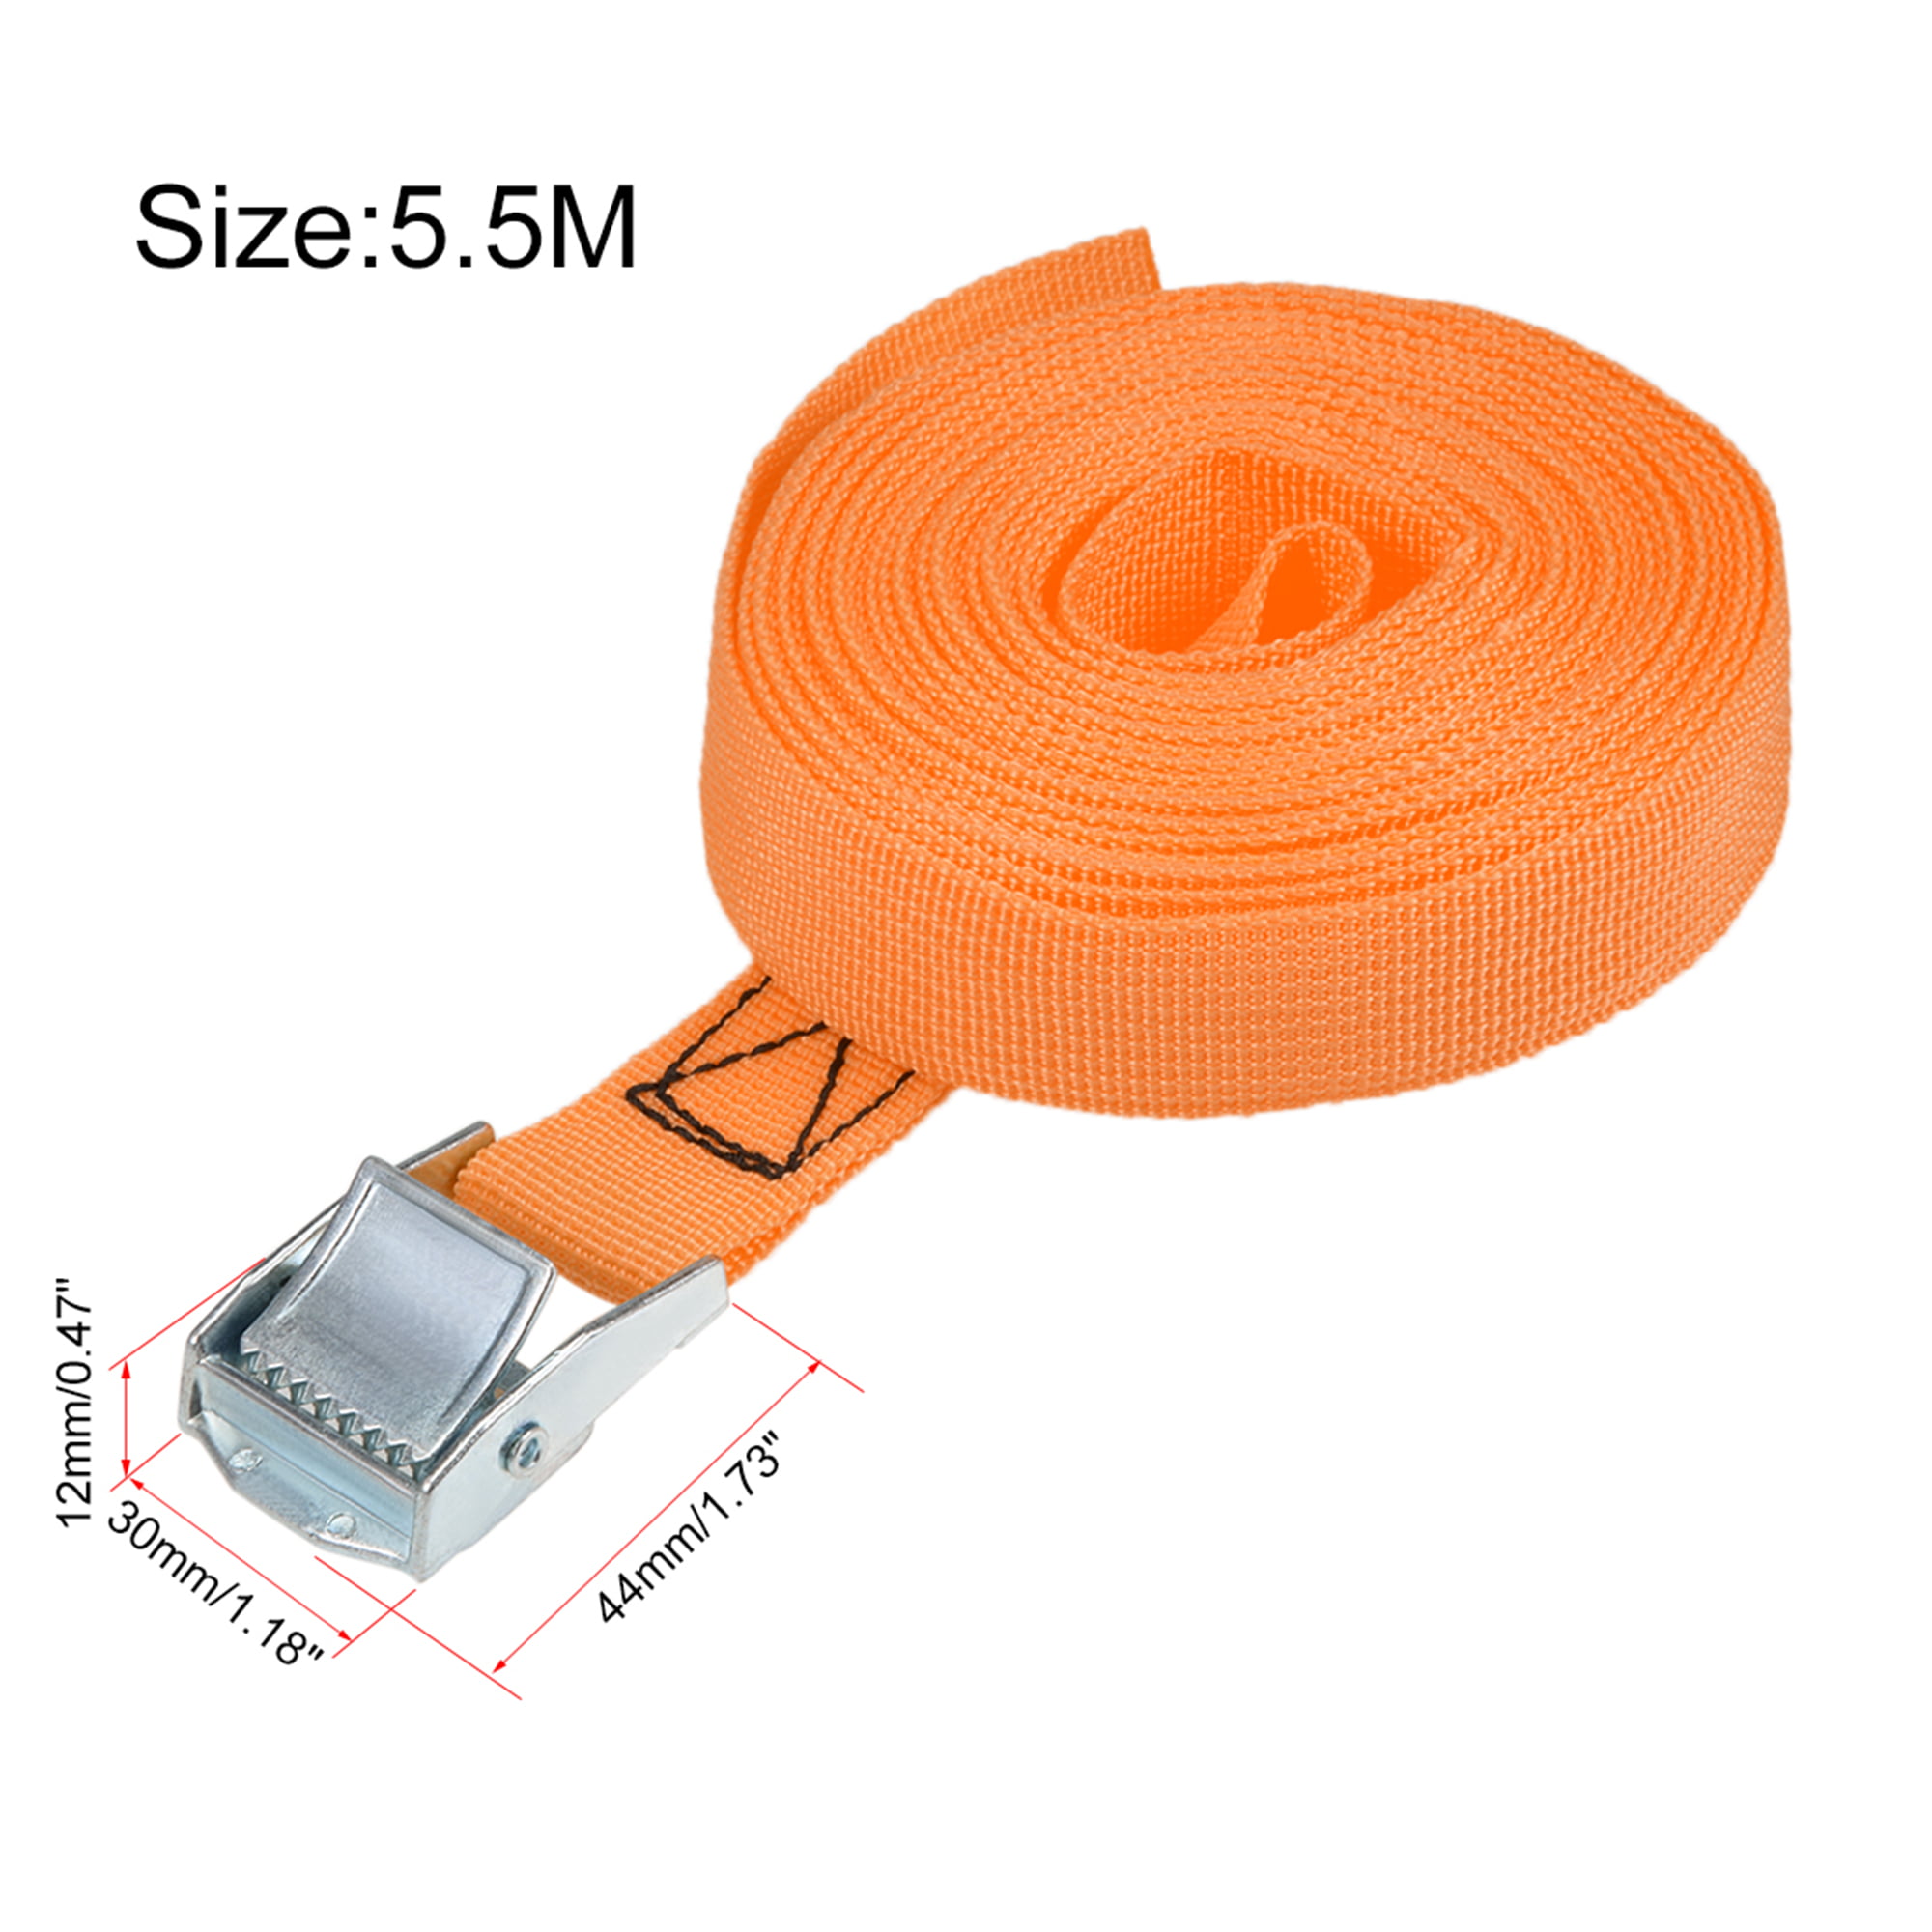 5.5M x 25mm Lashing Strap Cargo Tie Down Straps with Cam Buckle 250Kg Work  Load, Orange